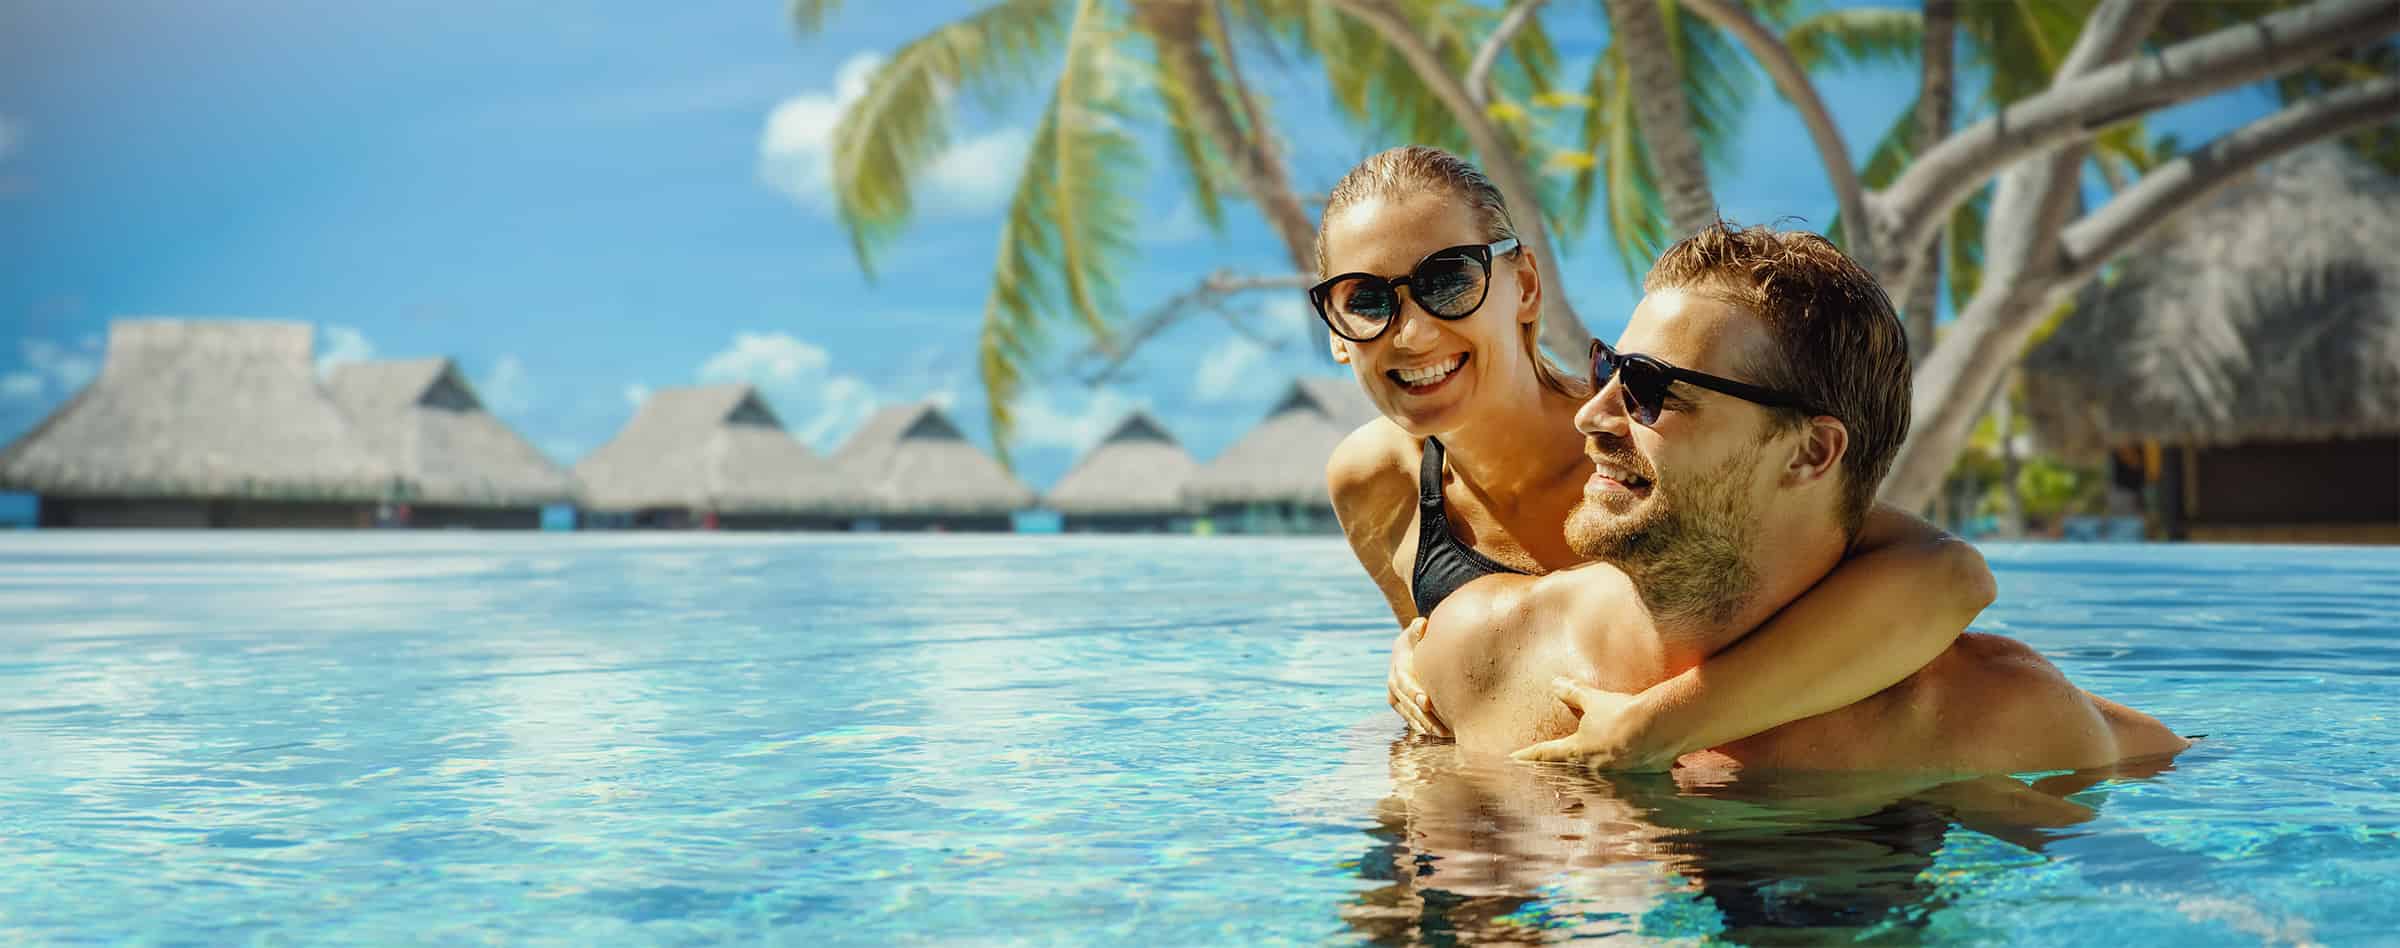 Man en vrouw in zwembad met palmbomen op de achtergrond